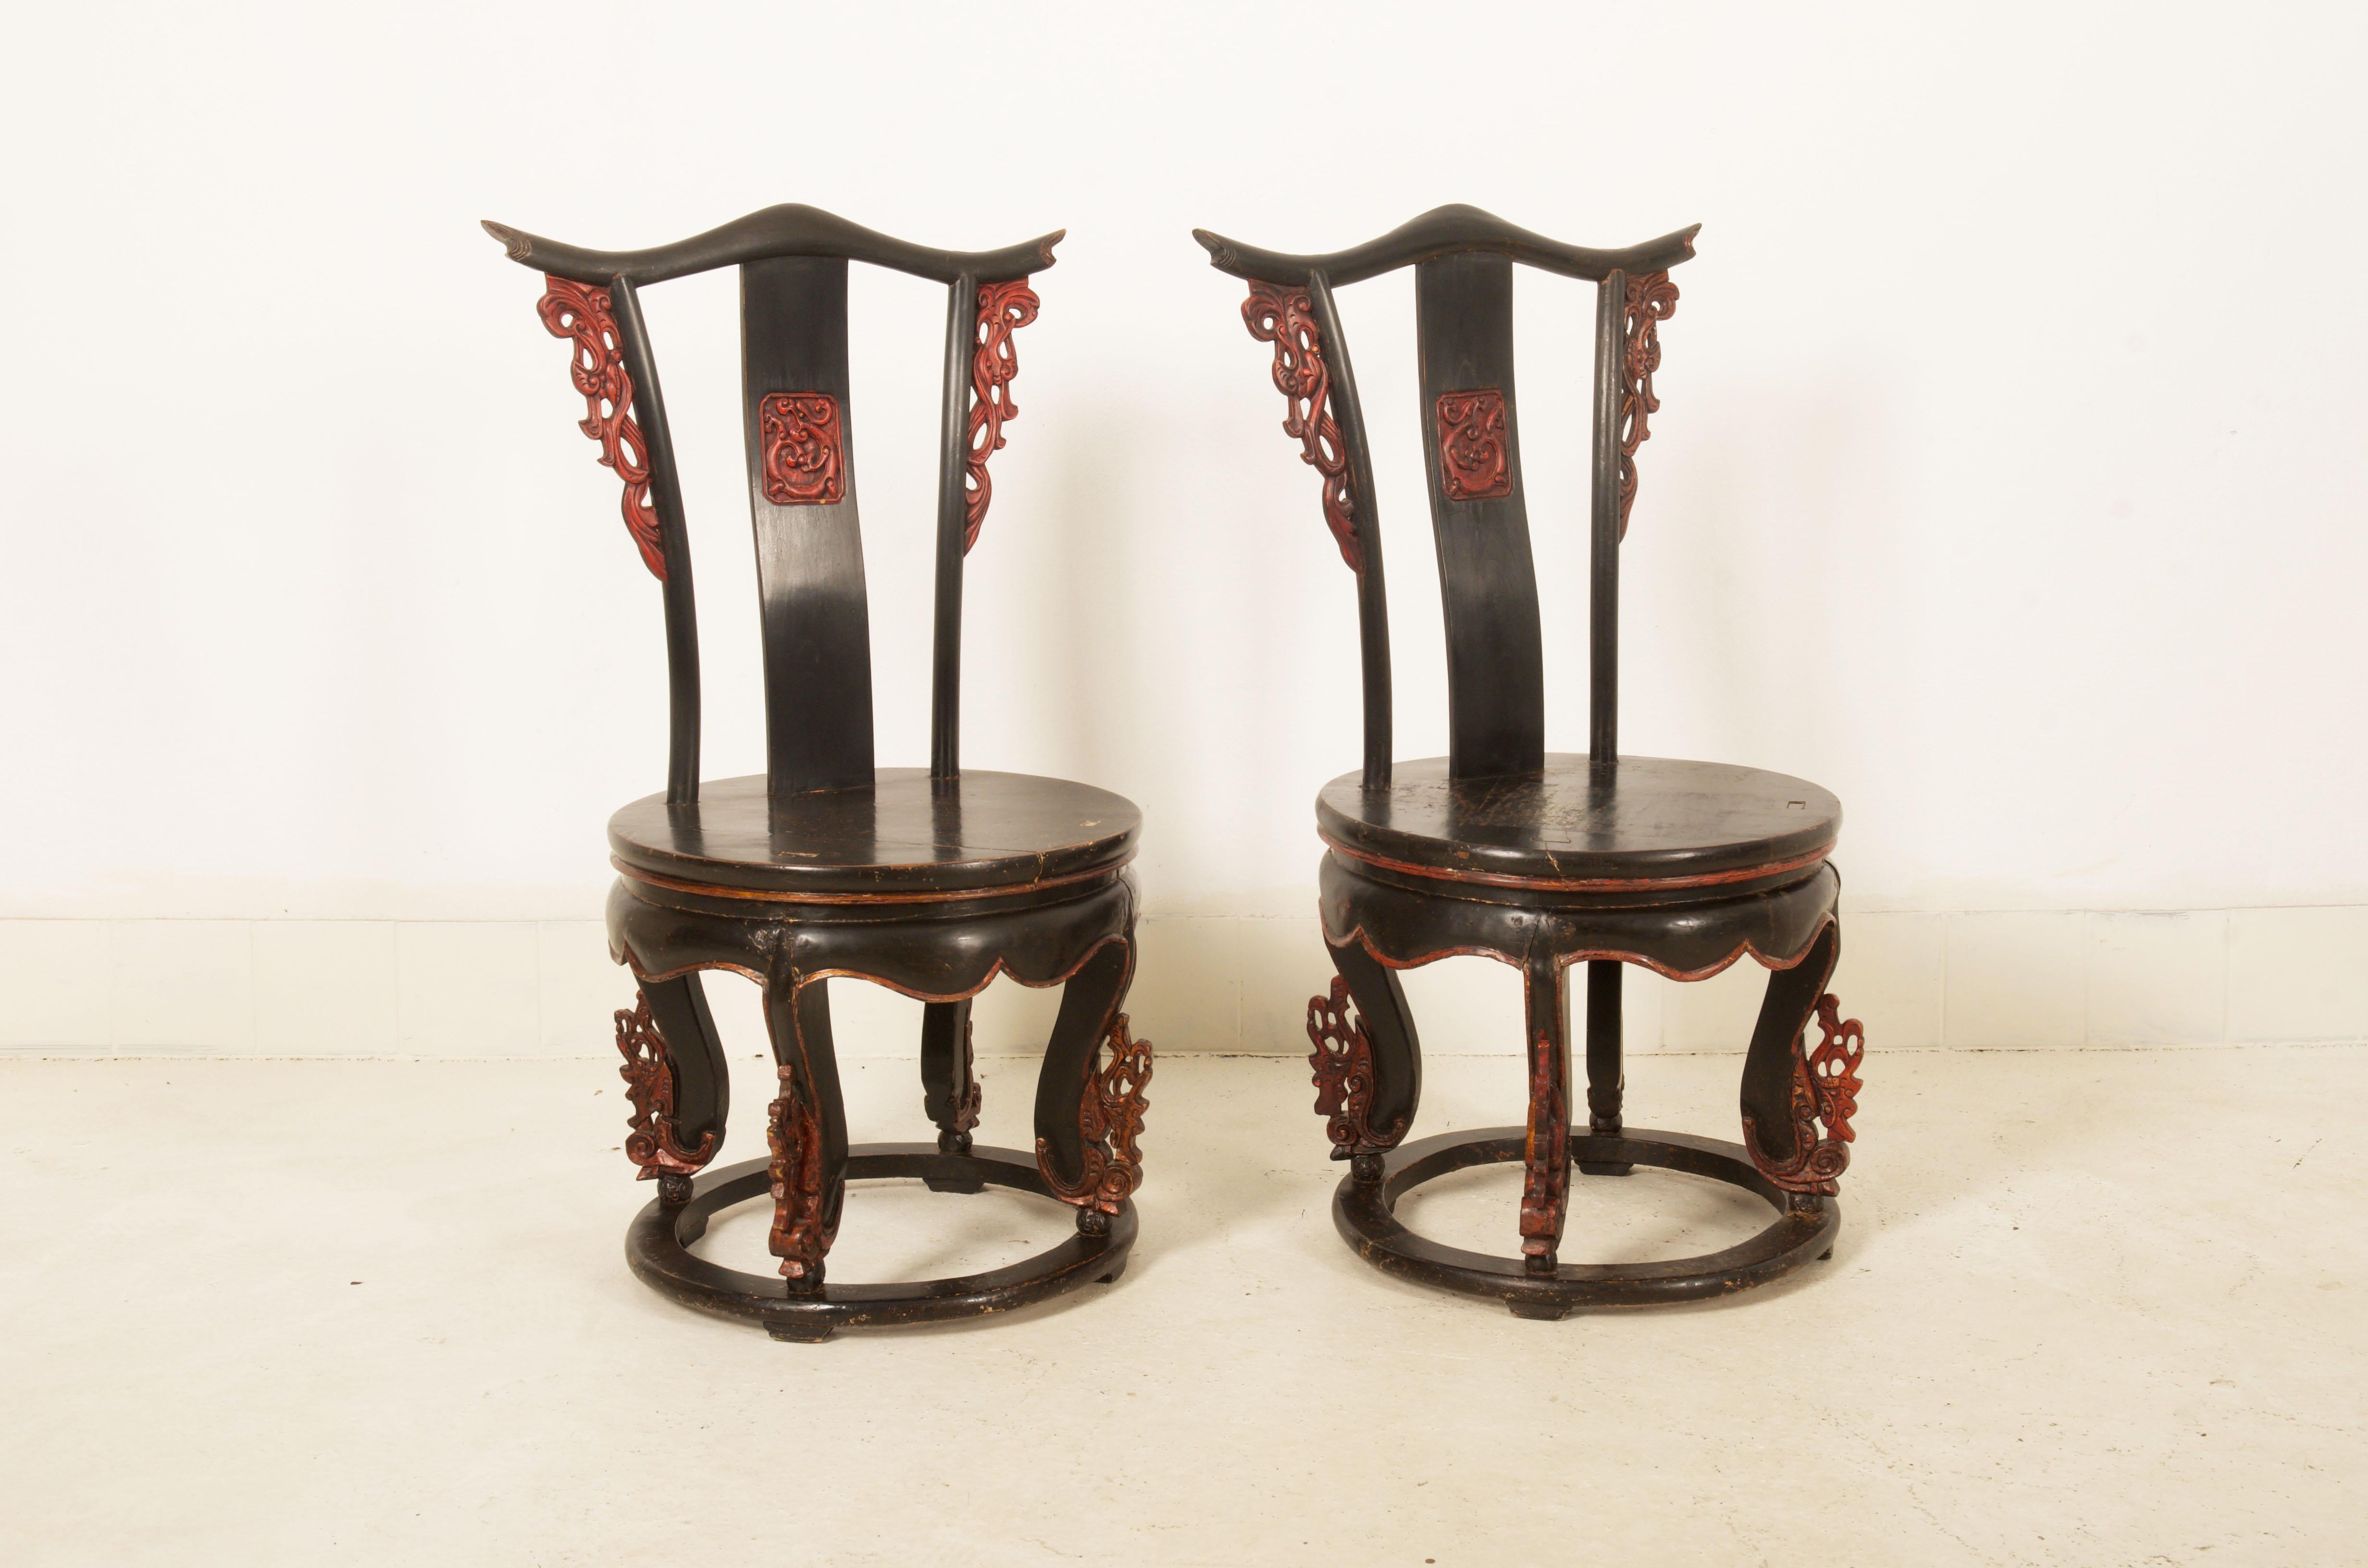 Hartholzrahmen schwarz und rot lackiert mit einigen Ornamenten auf der Rückenlehne und den Beinen. Hergestellt in China in der Mitte des 19. Jahrhunderts. Preis für beide.